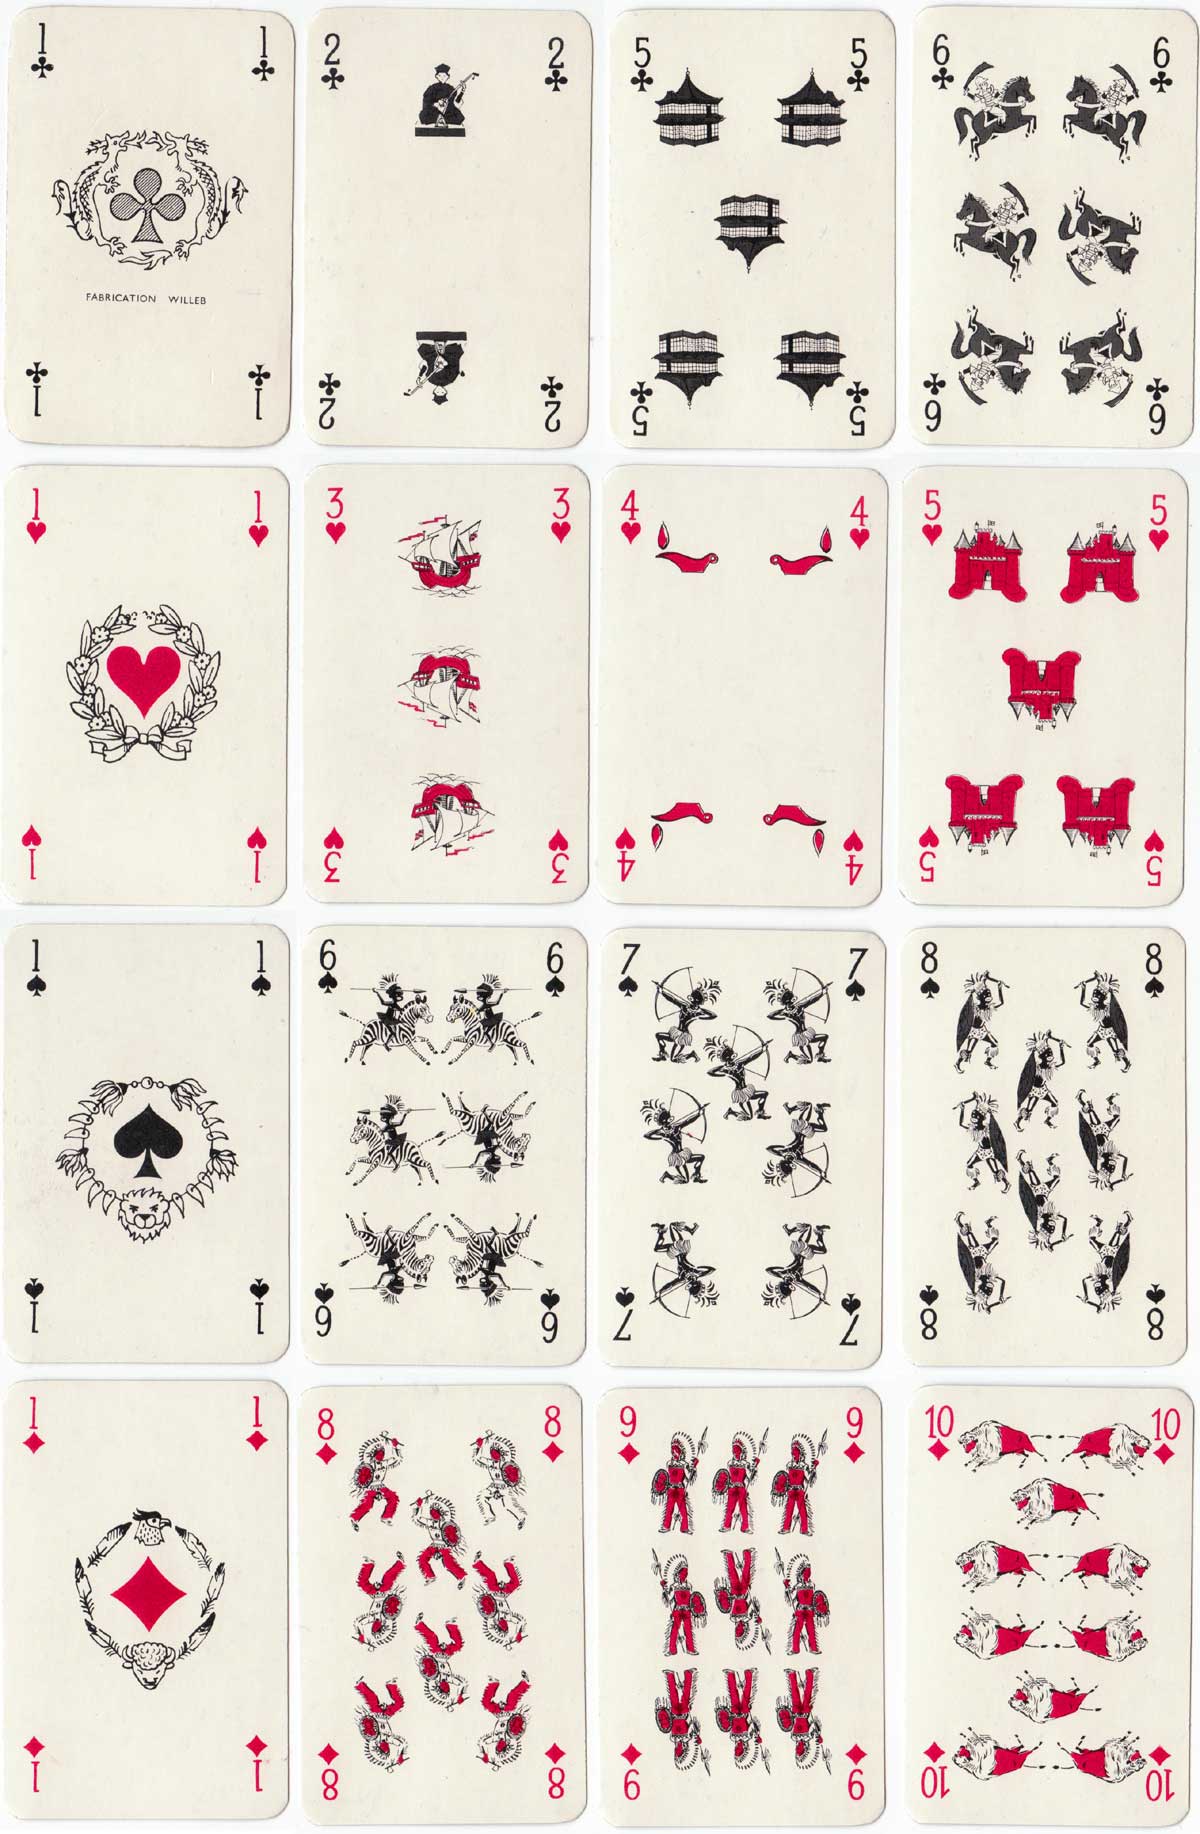 Jeu de Bataille card game published by Éditions Willeb, Paris